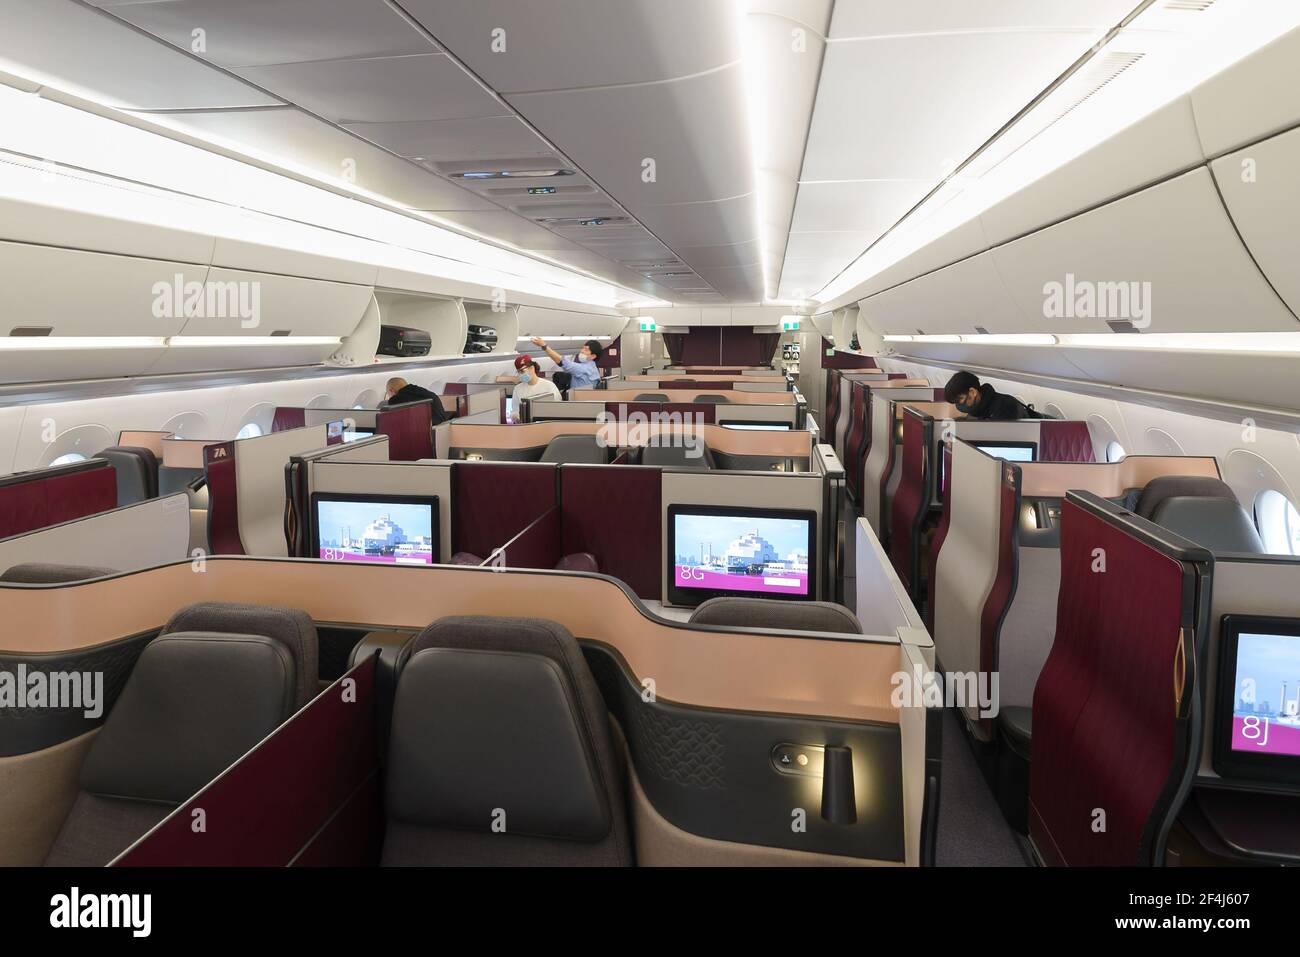 Cabina Qatar Airways QSuites su Airbus A350. QSuite è un sedile di classe business premium con porte introdotte da Qatar Airways. Imbarco a Doha, Qatar. Foto Stock